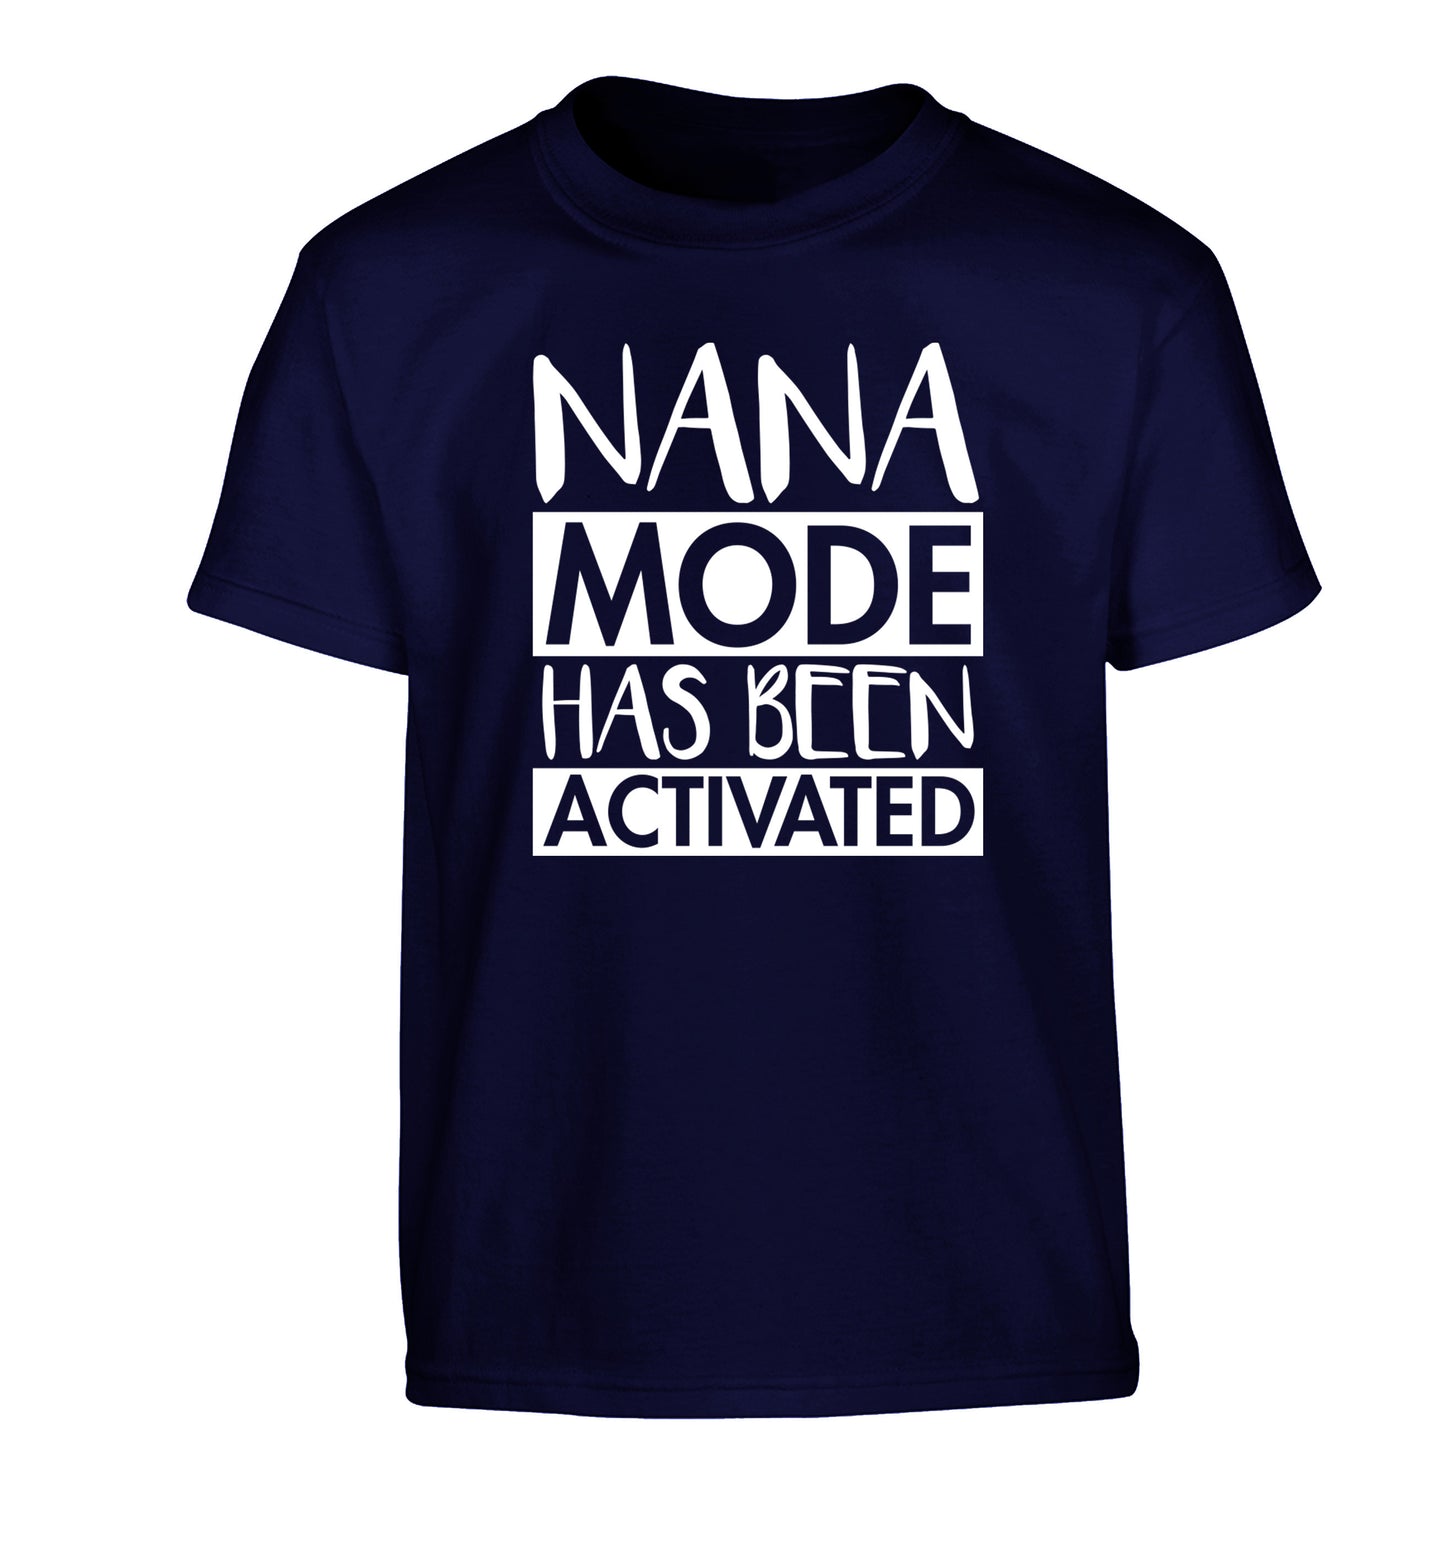 Nana mode activated Children's navy Tshirt 12-14 Years